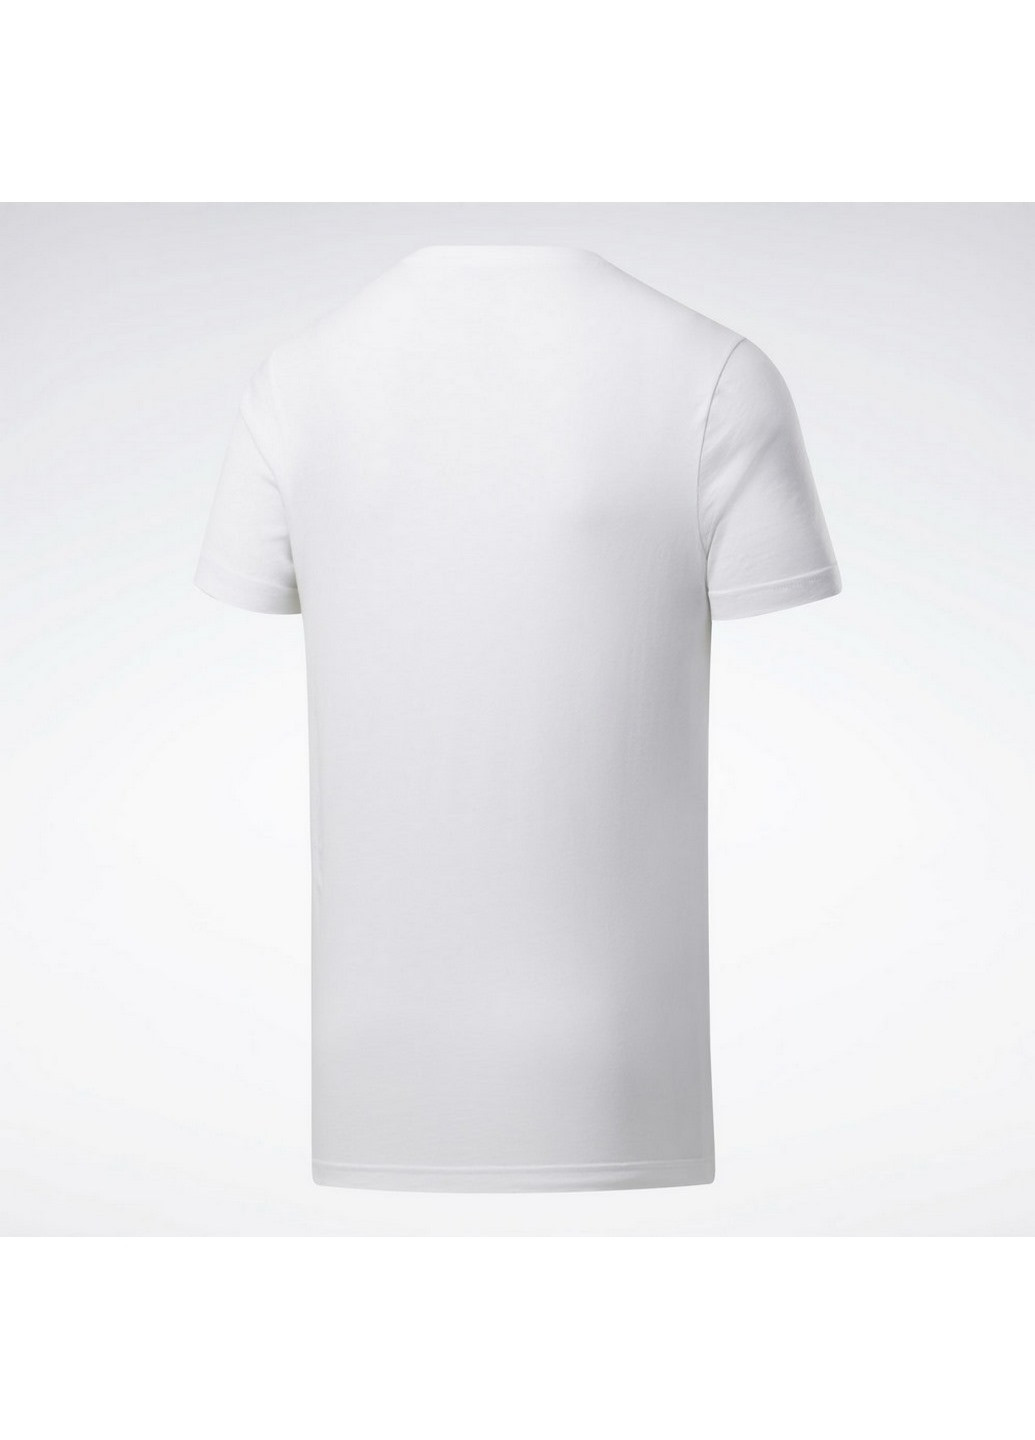 Белая футболка мужская gs linear re white fp9163 Reebok